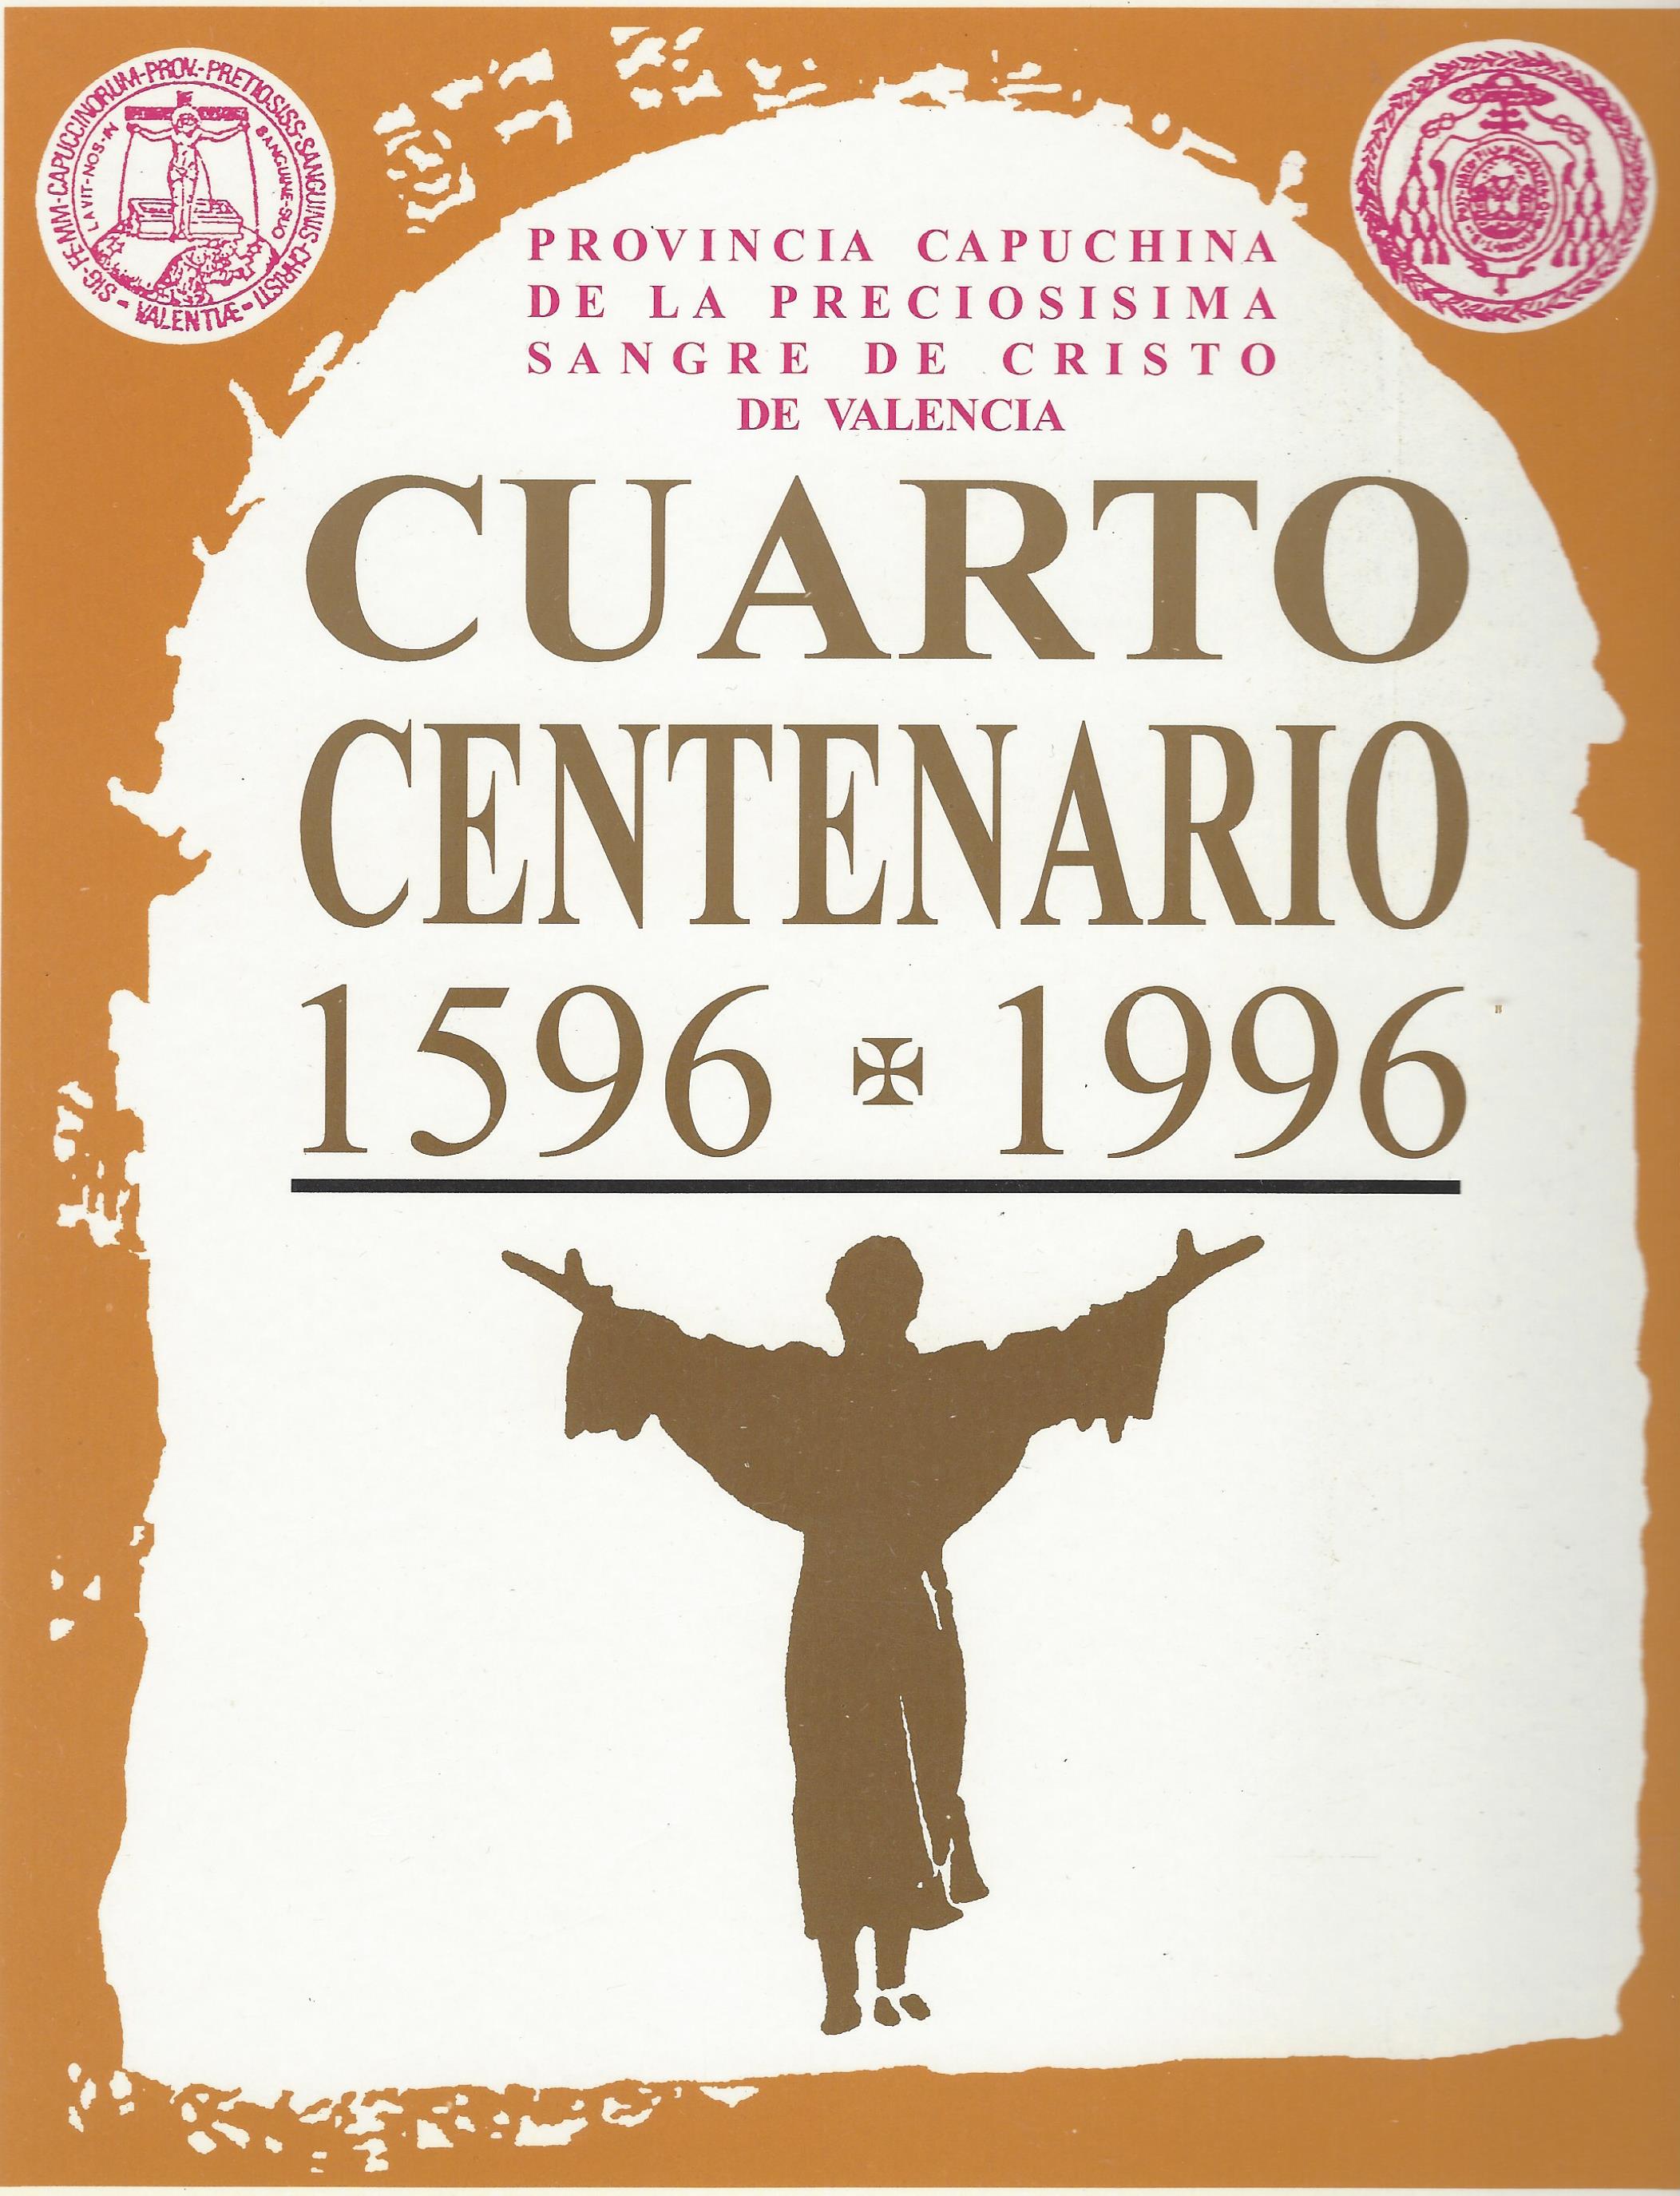 Provincia Capuchina de la Preciosísima Sangre de Cristo de Valencia -Cuarto Centenario 1596-1996